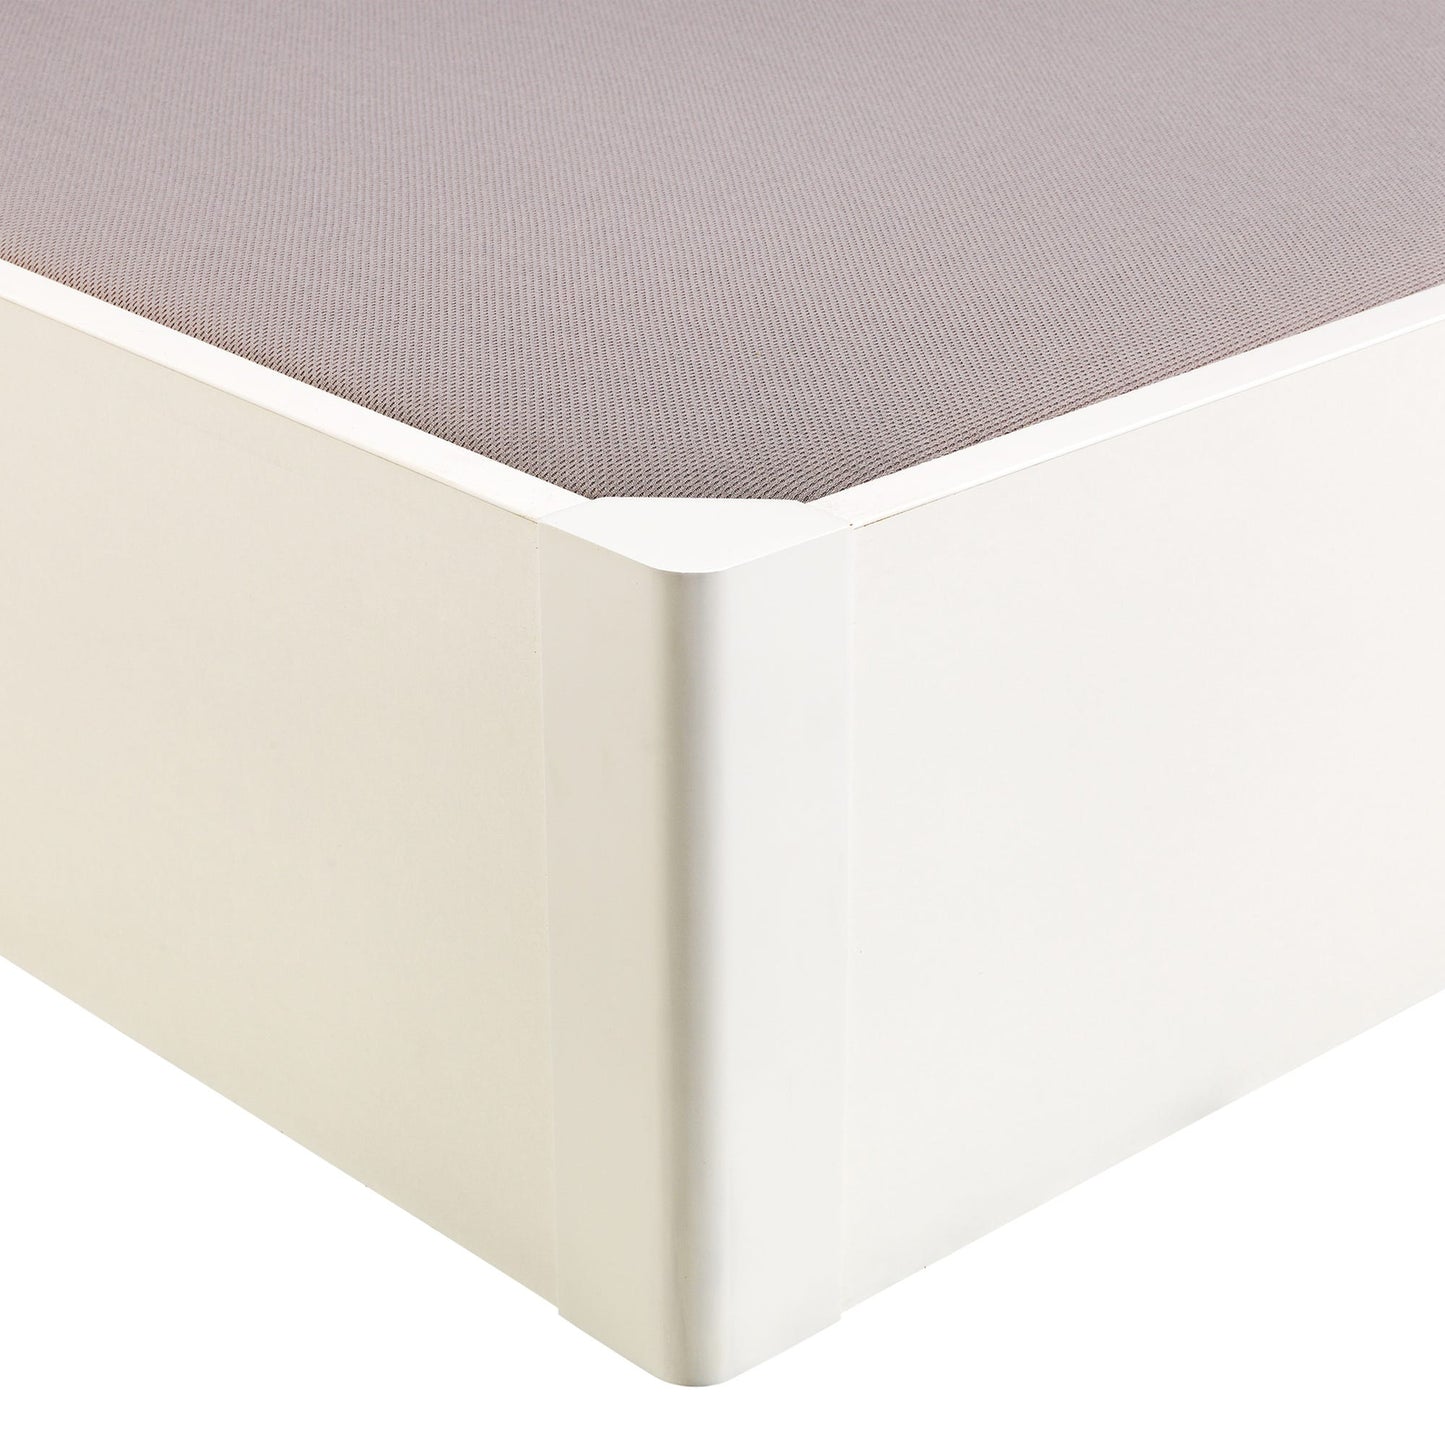 Canapé abatible de madera tapa única de color blanco - DESIGN - 140x190